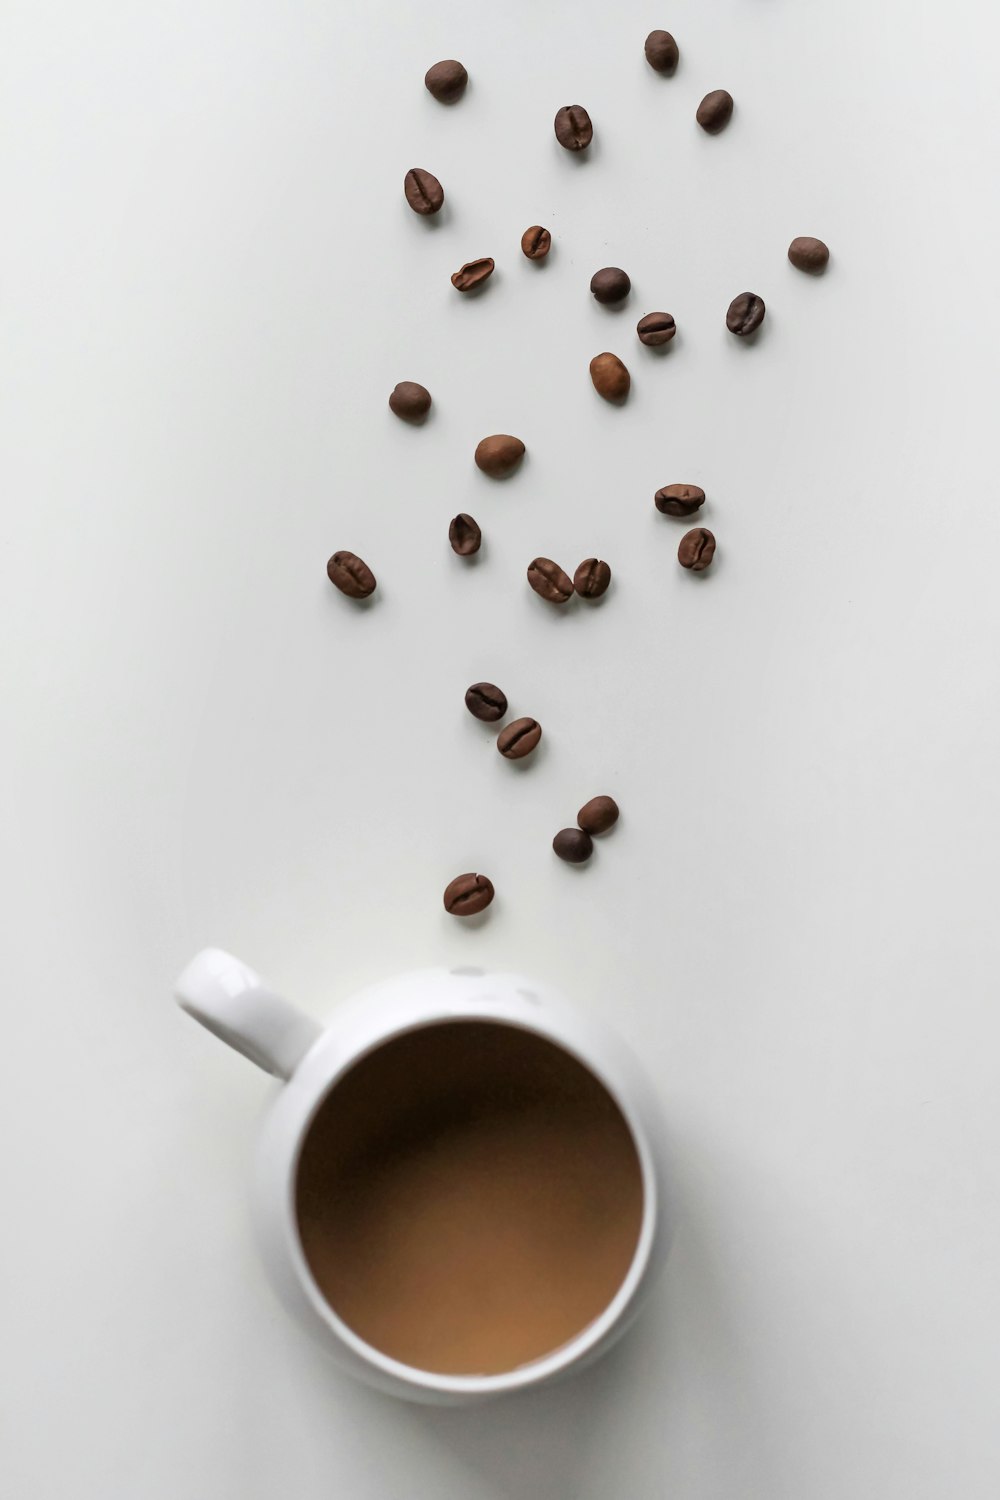 grains de café et tasse remplie de café